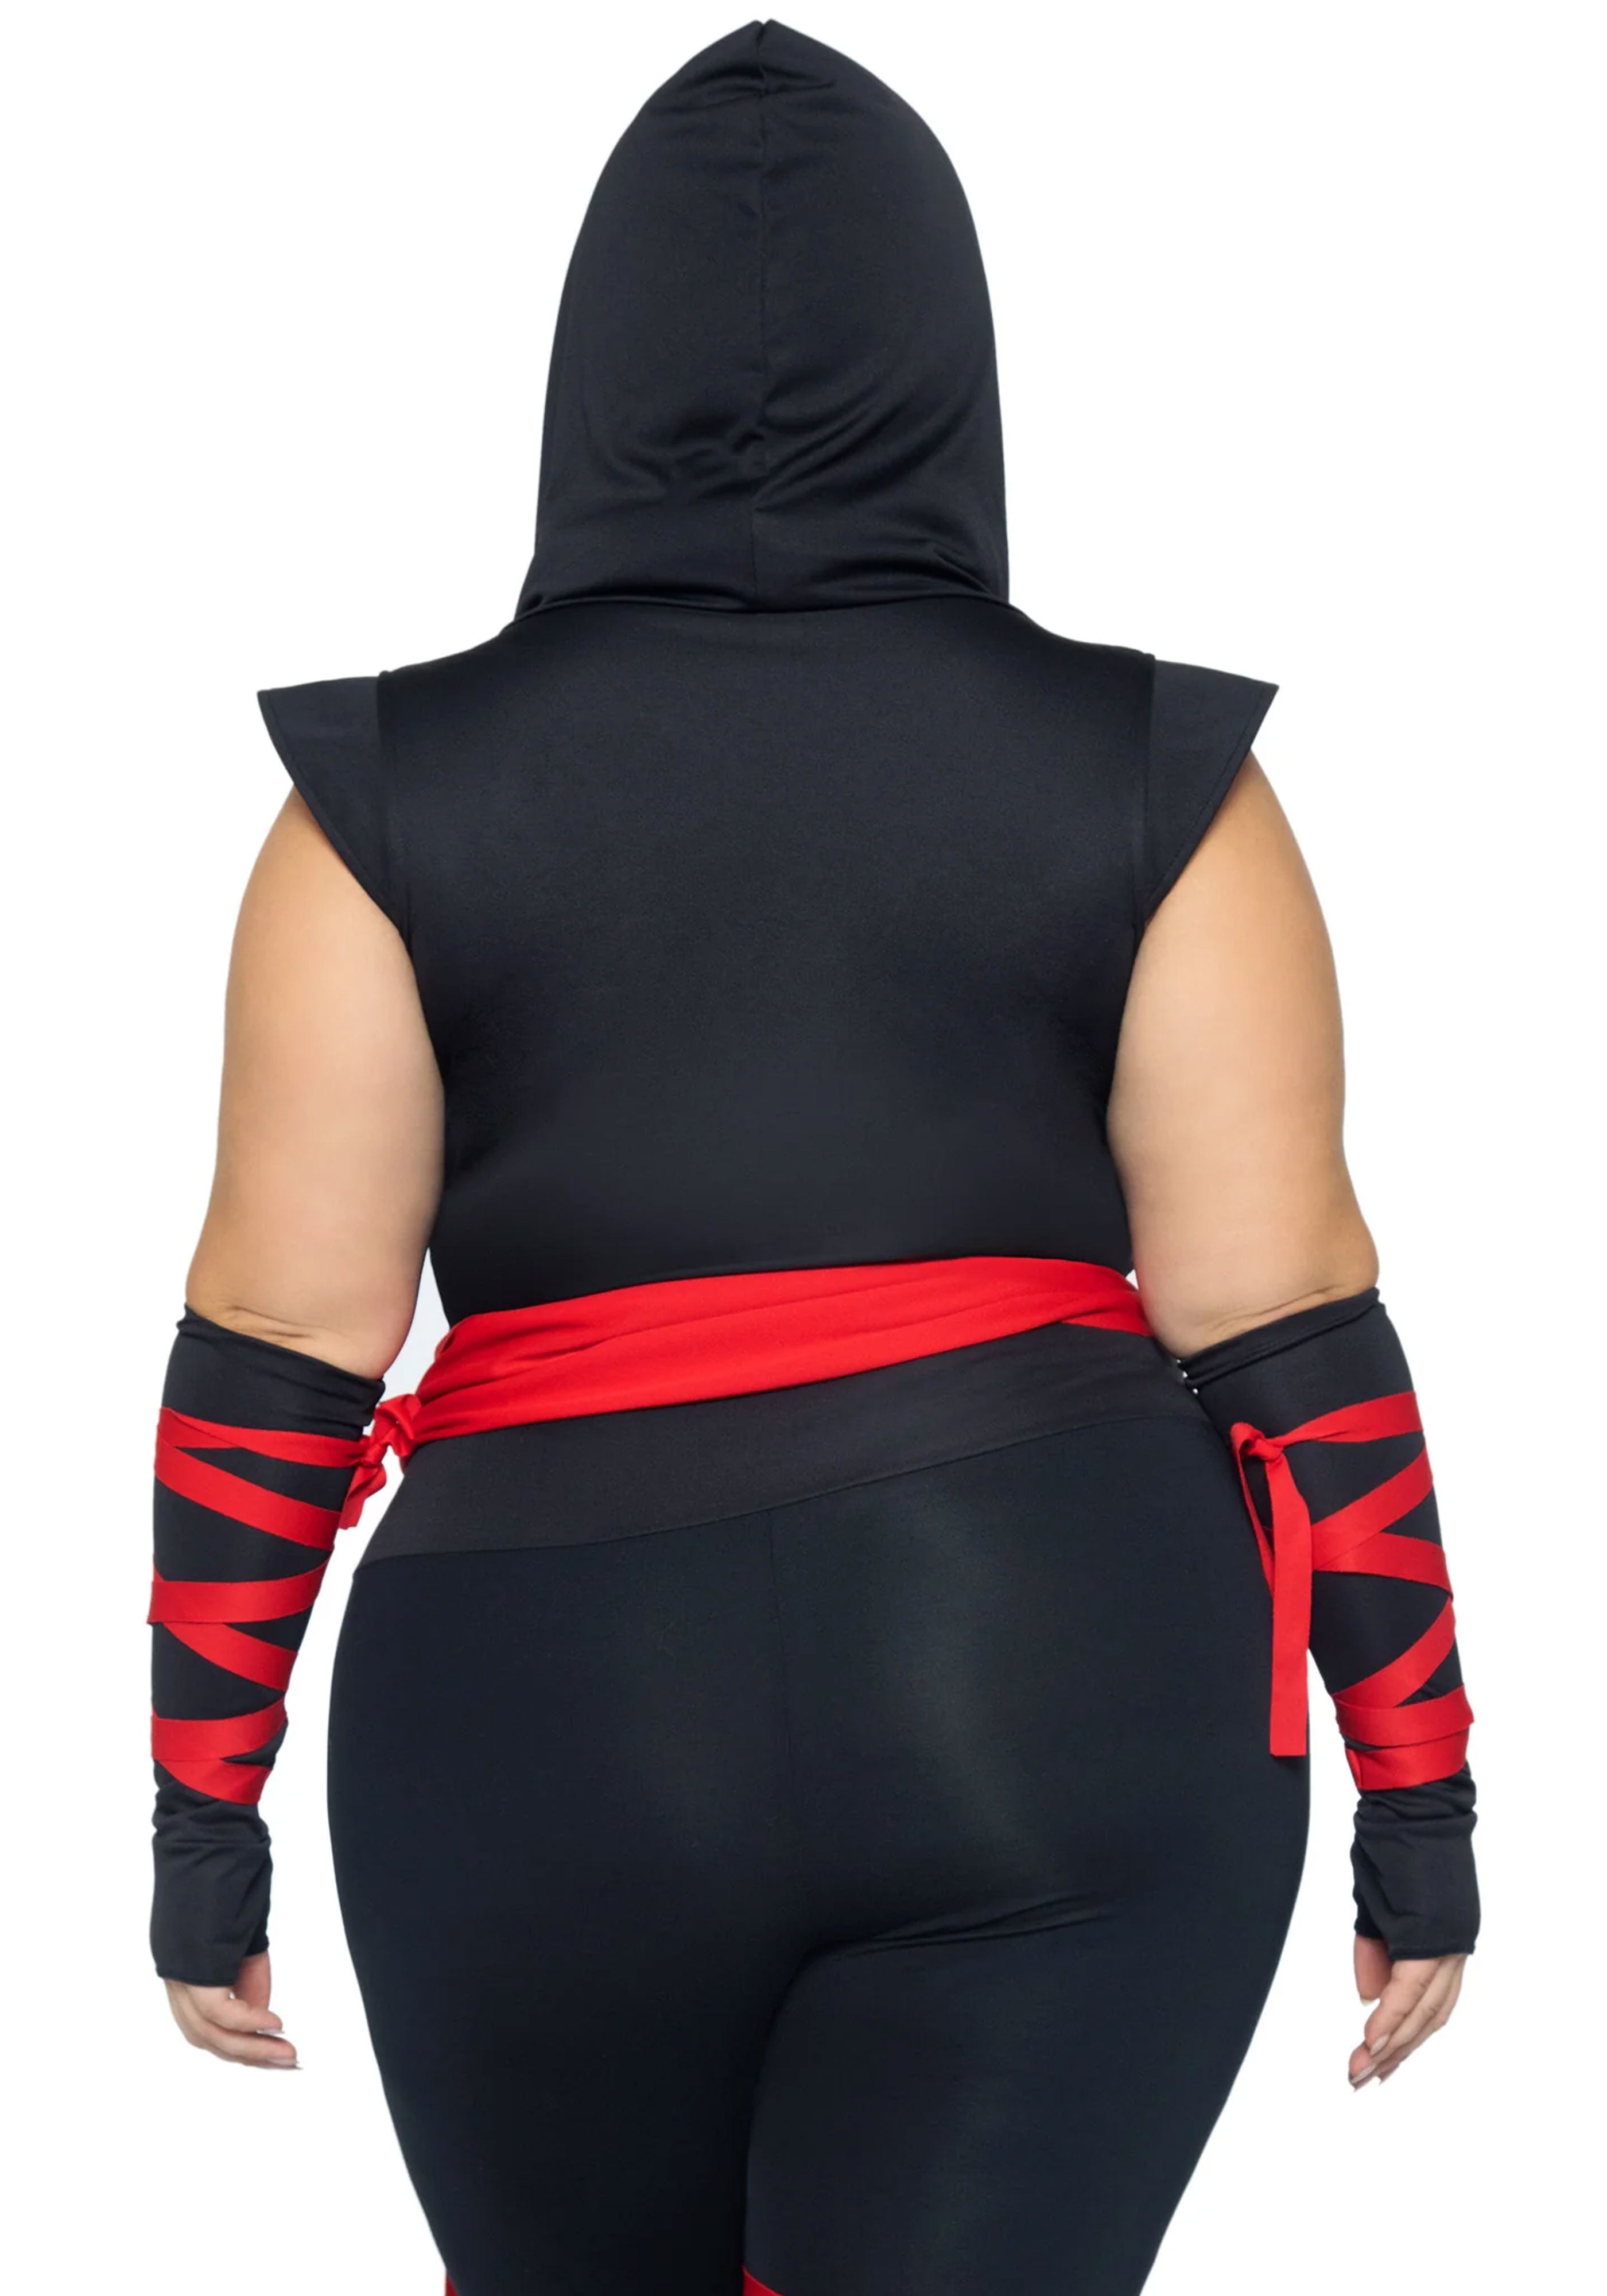 Deadly Ninja Grote Maat Kostuum